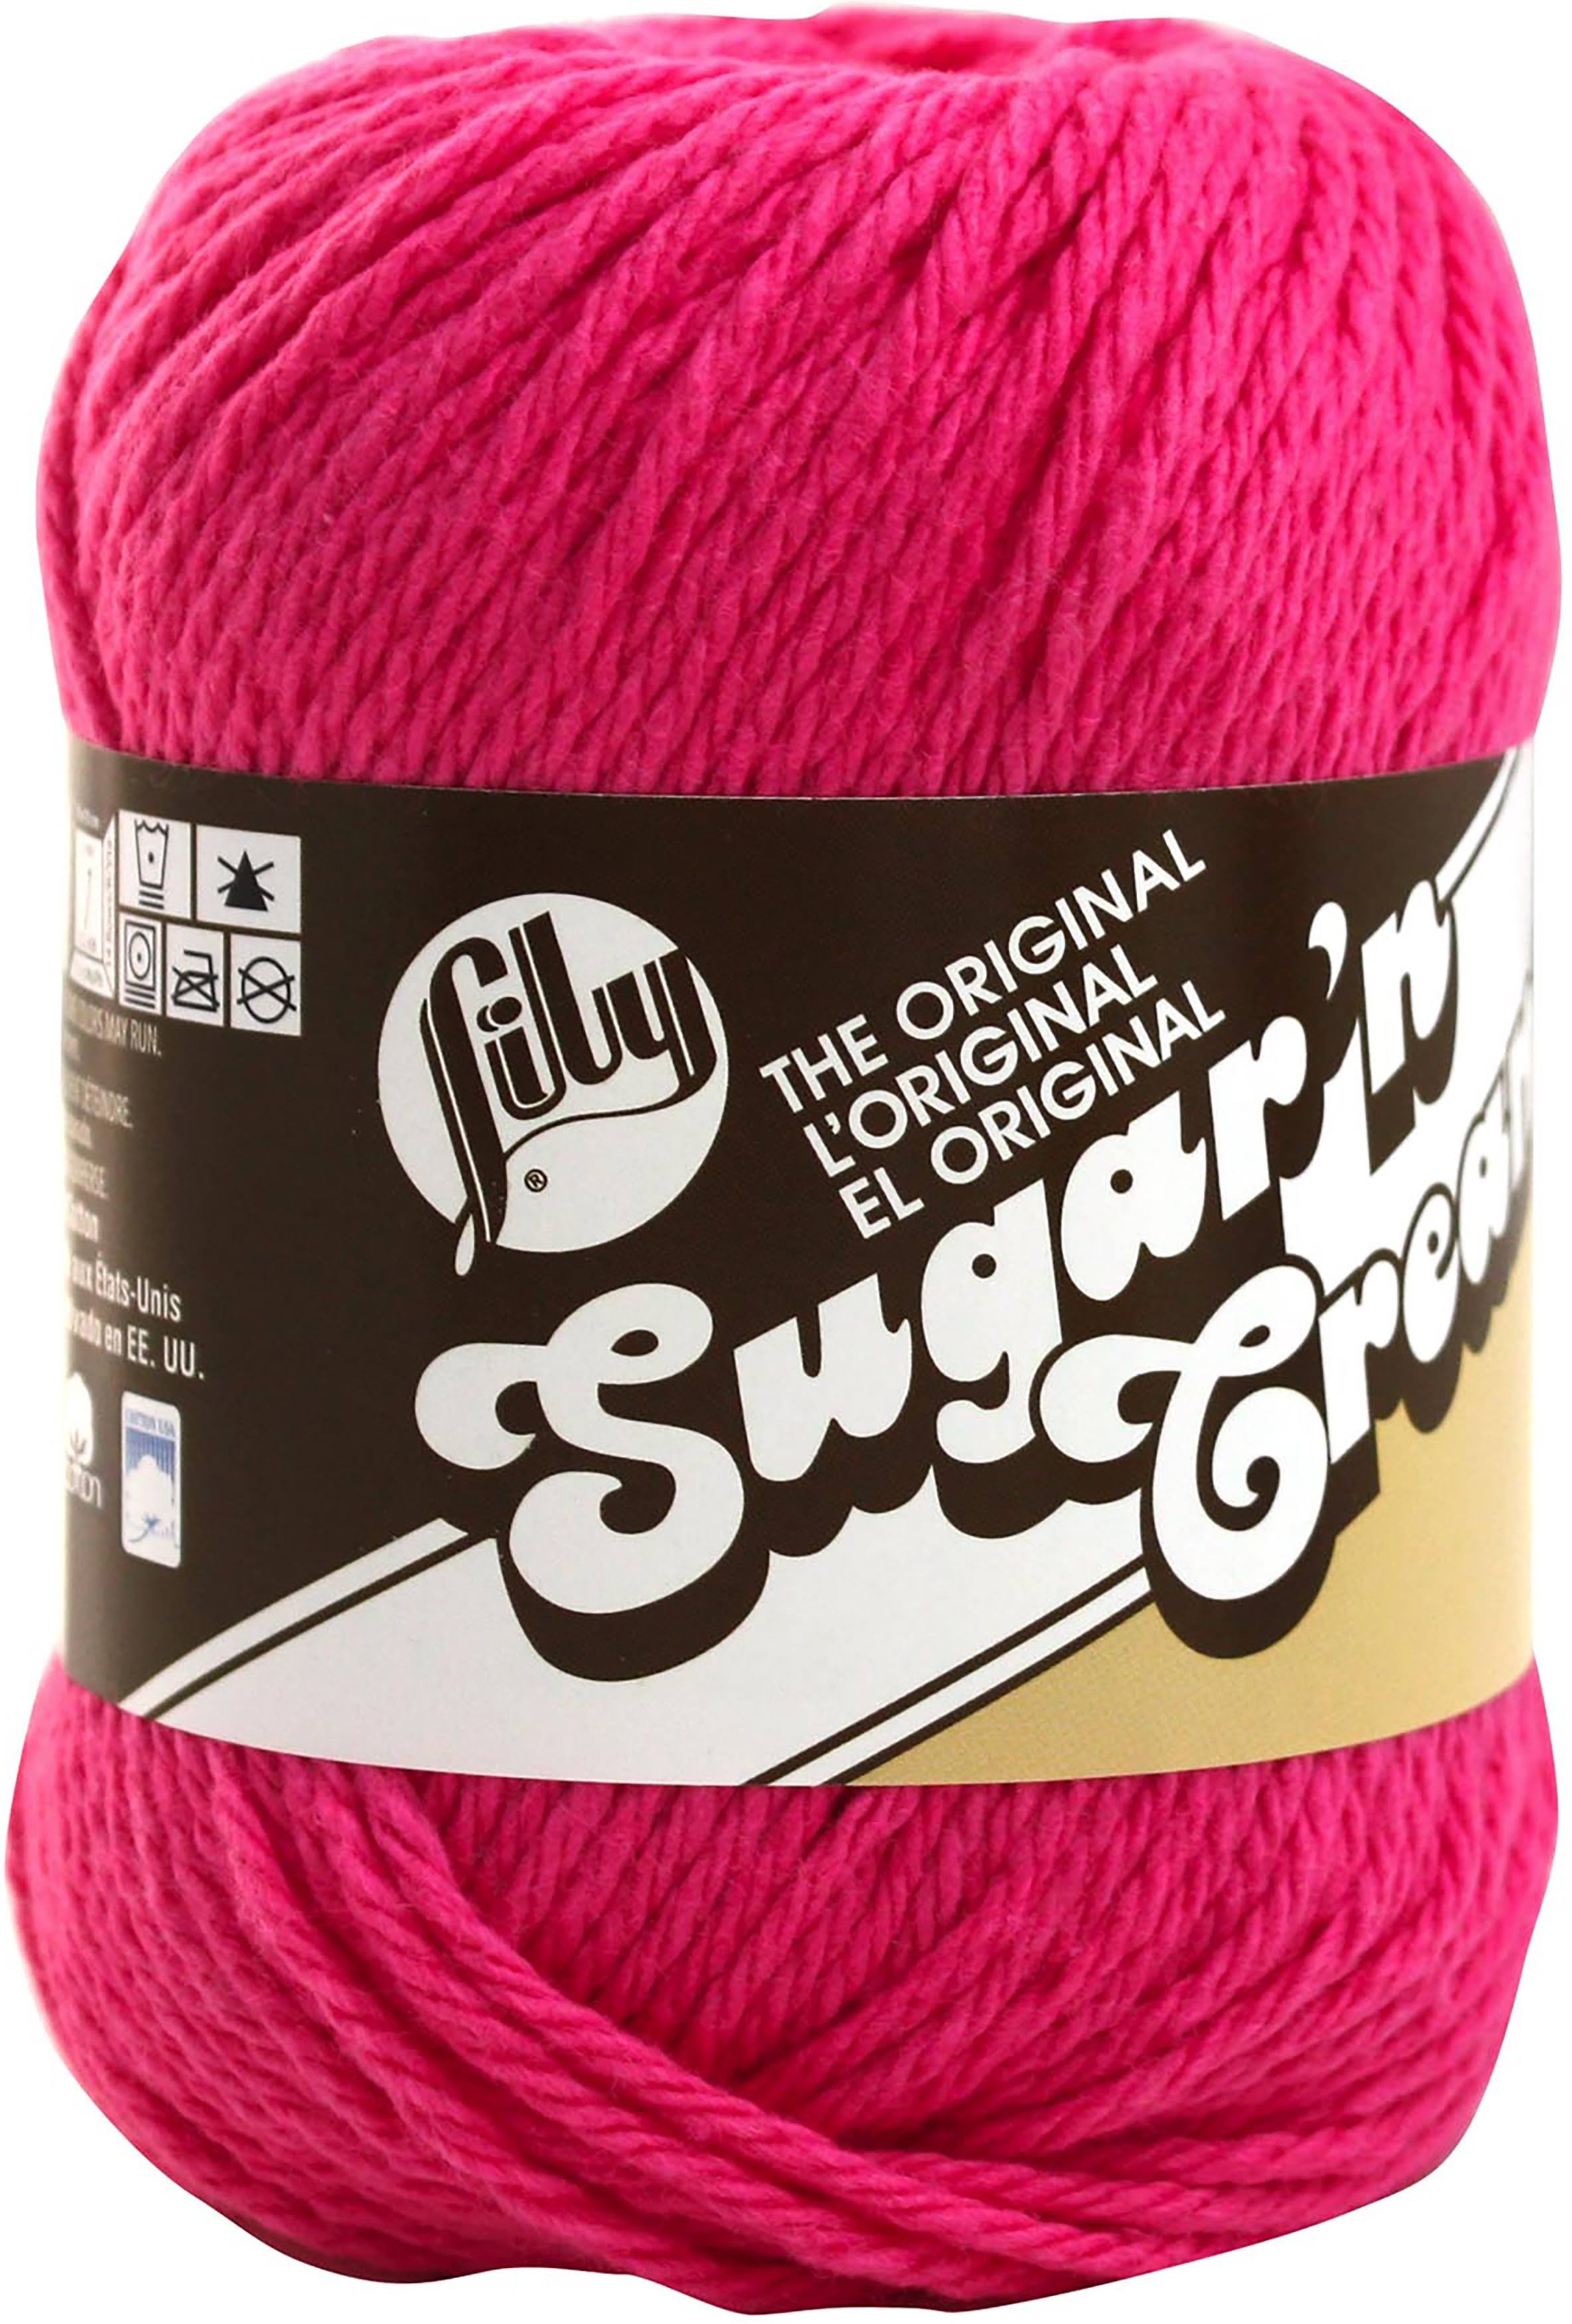 Lily Sugar 'N Cream Yarn - Hot Pink